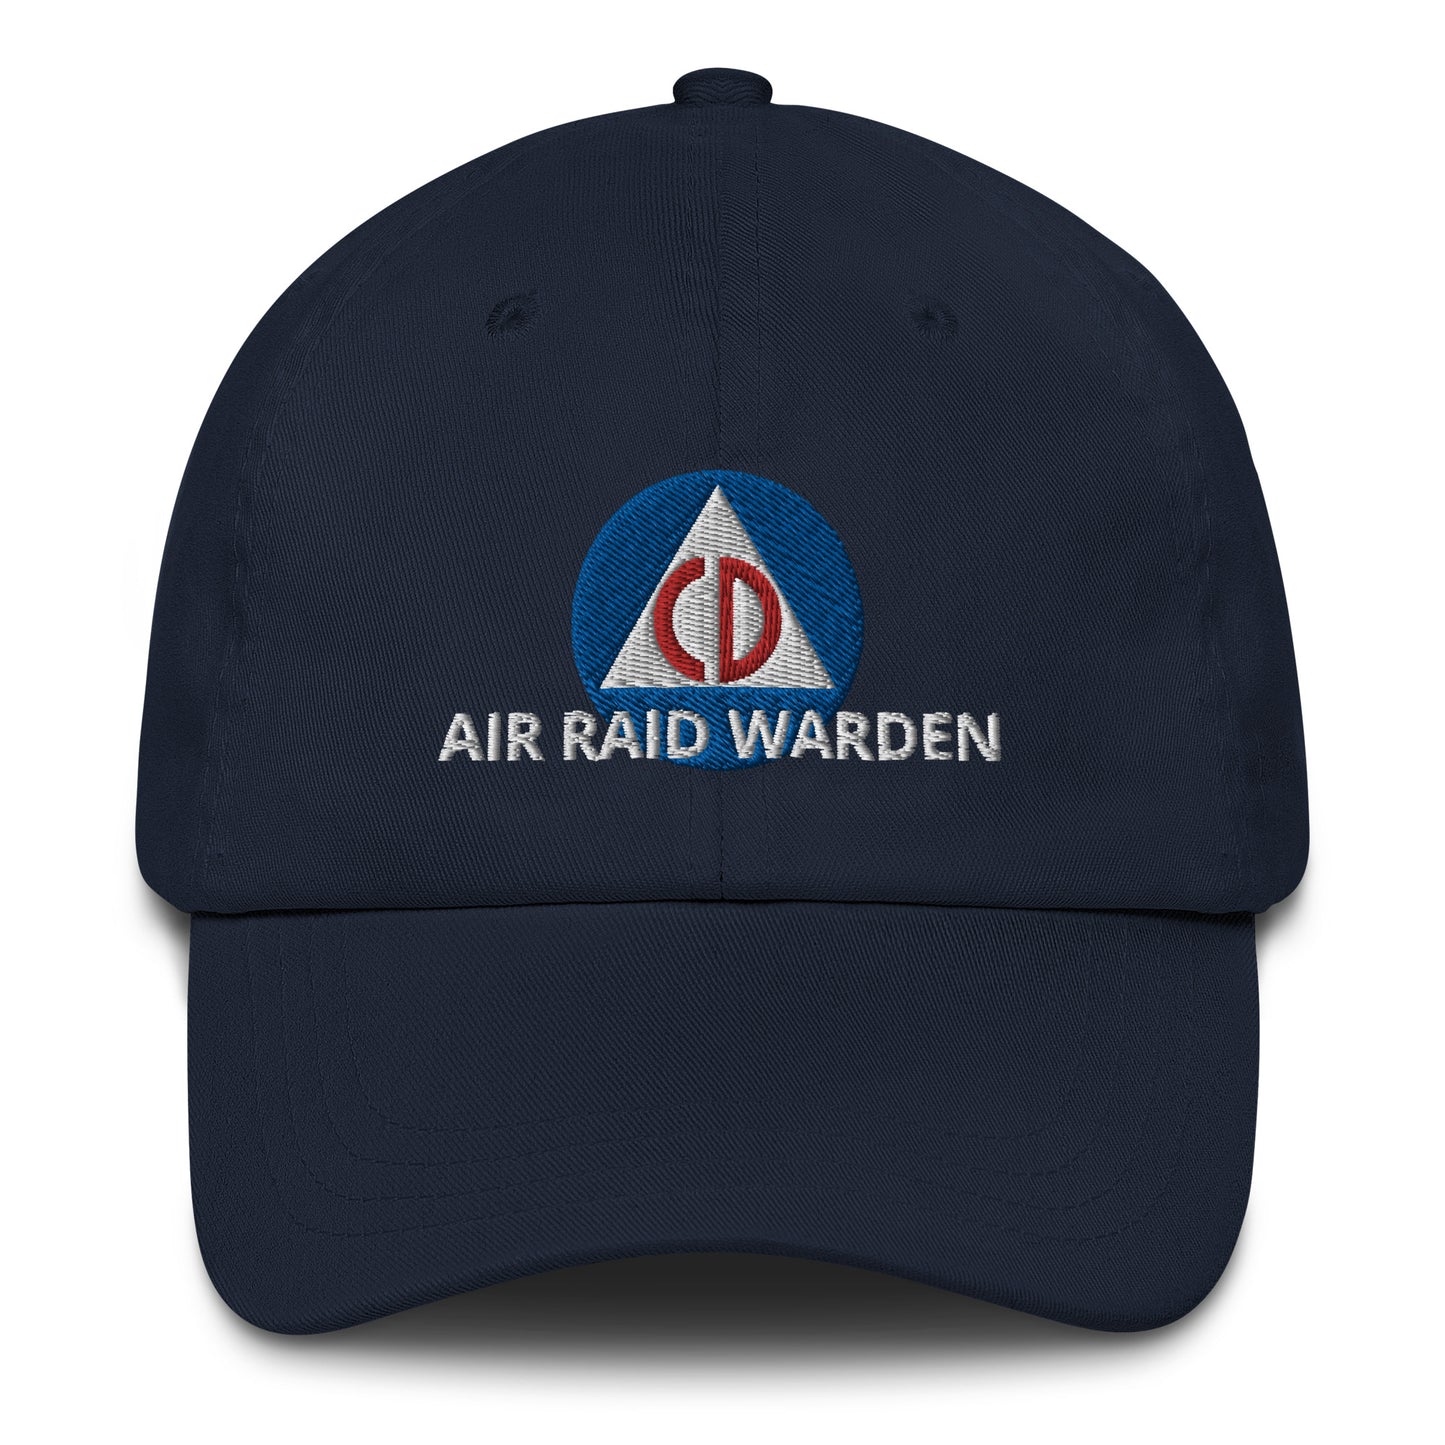 CIVIL DEFENSE AIR RAID WARDEN HAT